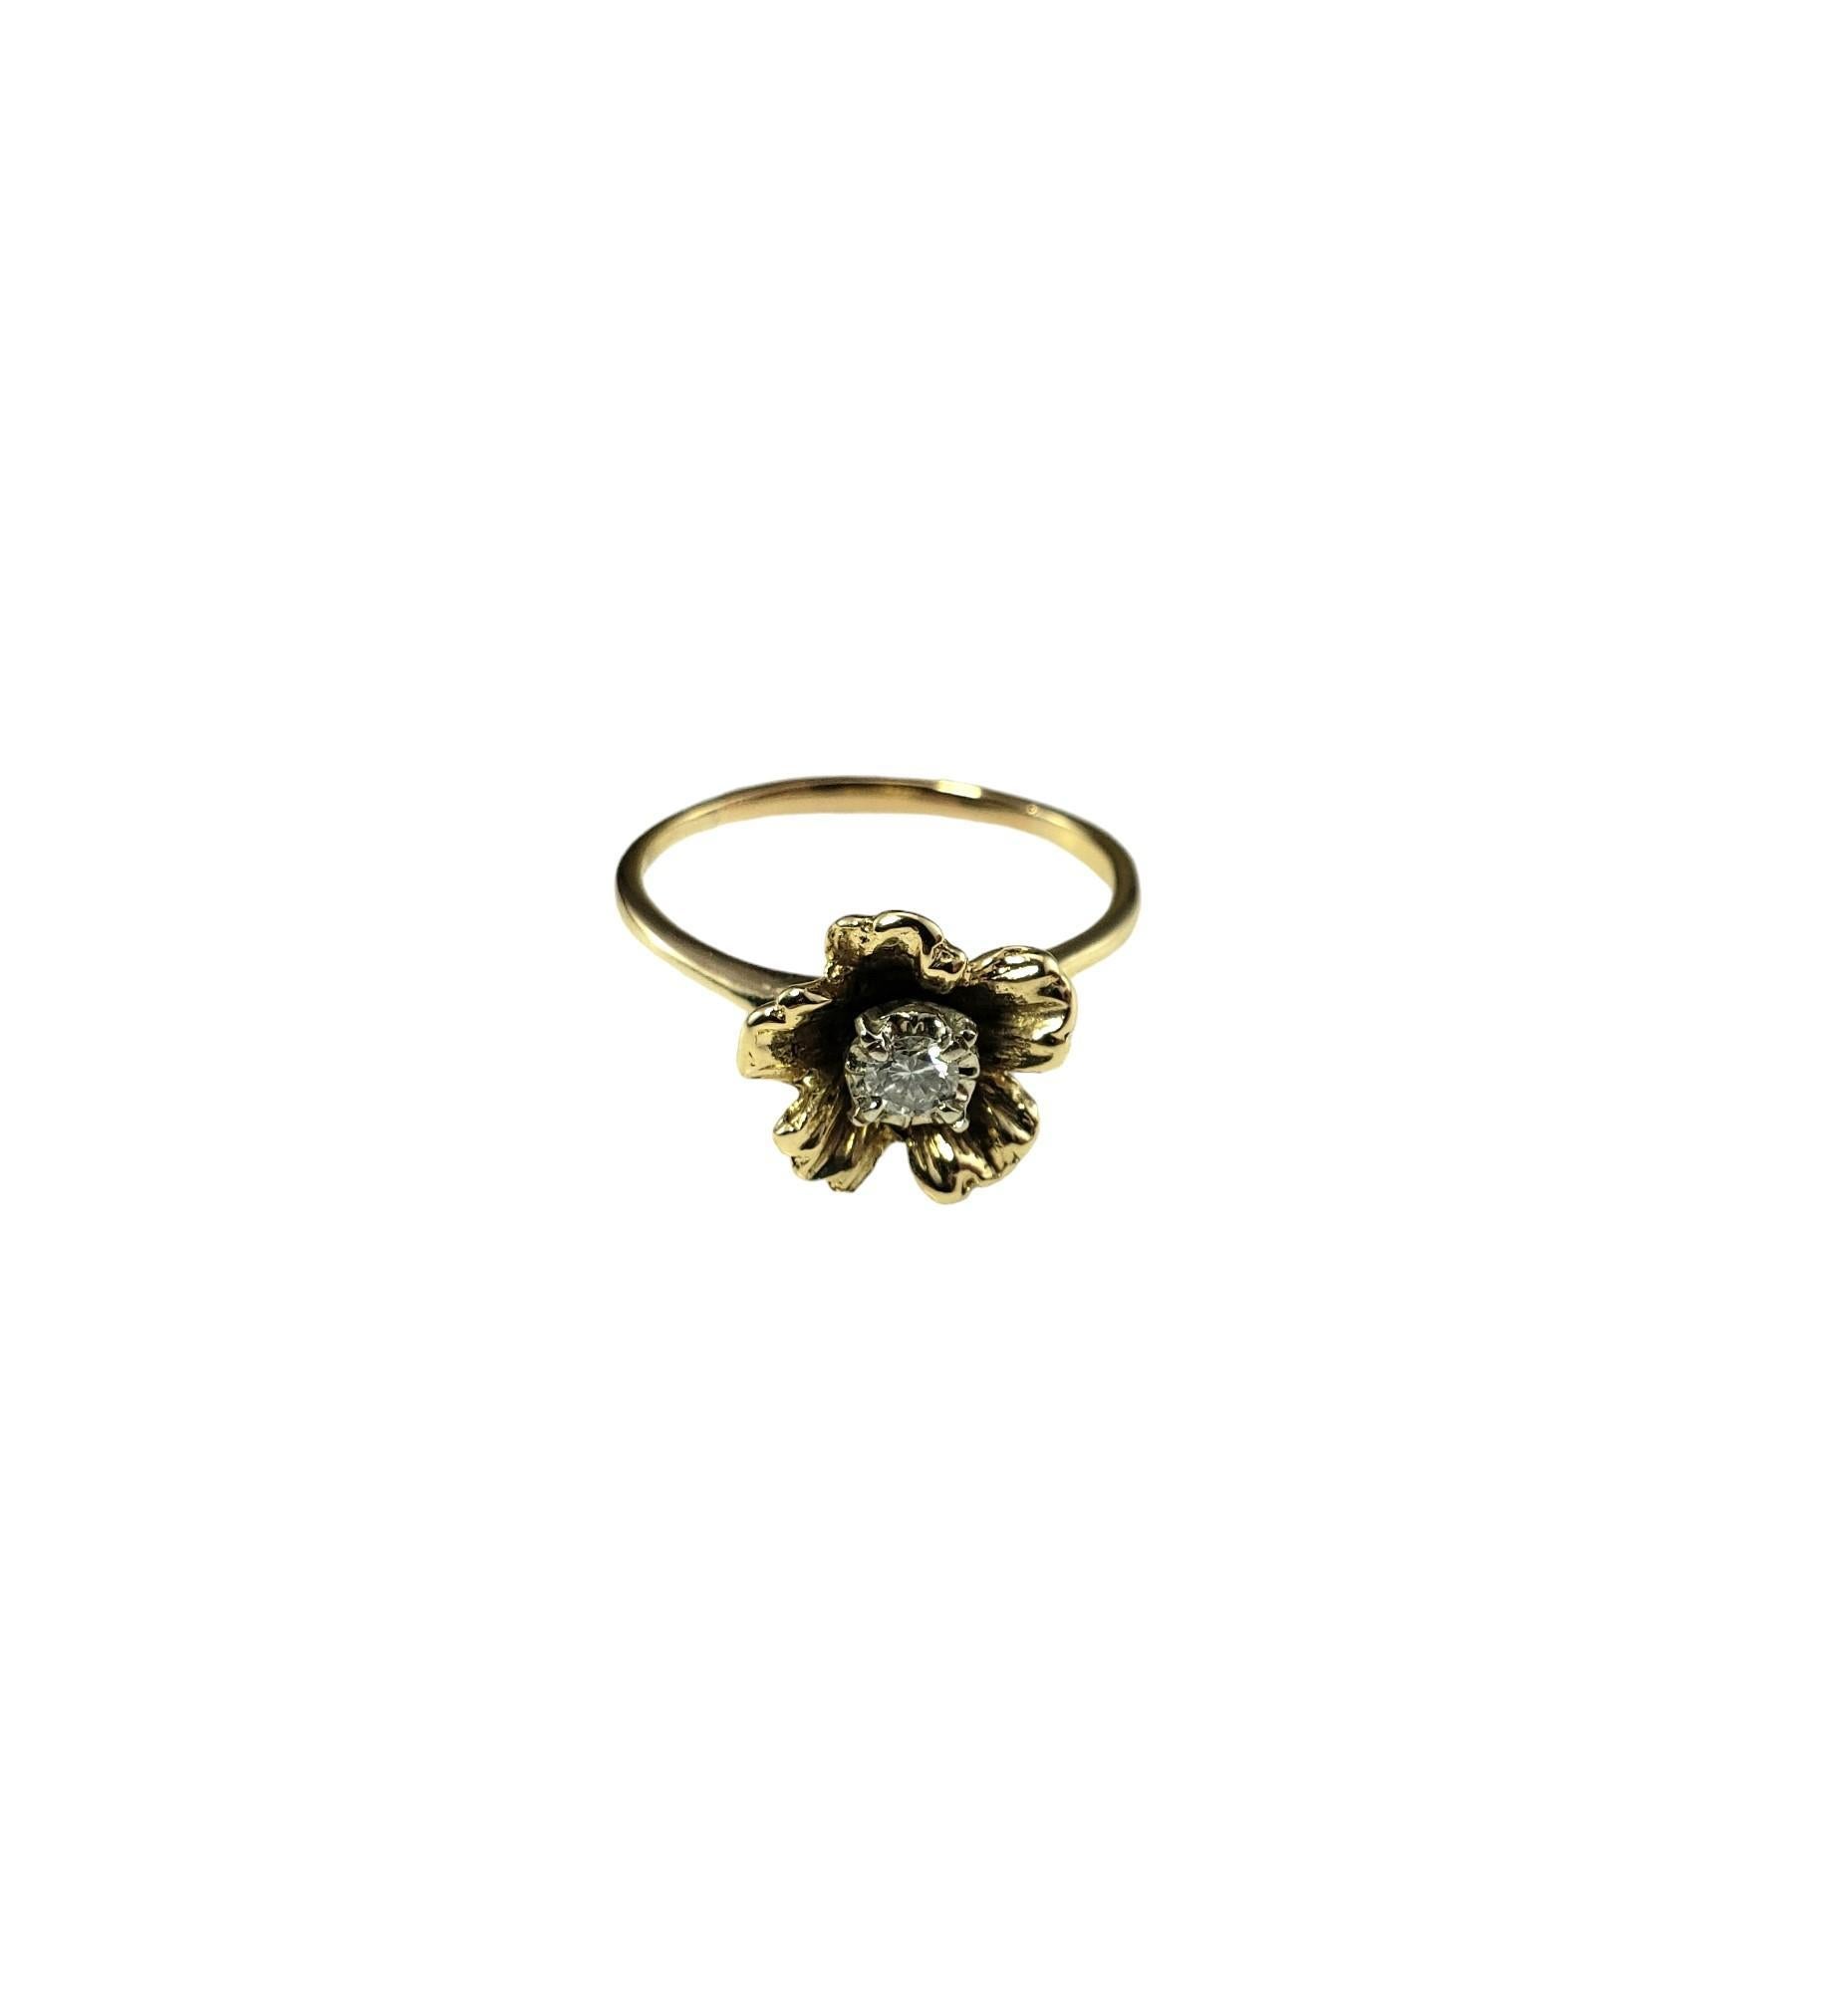 14 Karat Gelbgold und Diamant Blumenring Größe 8

Dieser hübsche Ring aus 14 Karat Gelbgold ist mit einem runden Diamanten im Brillantschliff besetzt, der in ein wunderschönes, detailliertes Blumendesign eingefasst ist.  

Breite: 11 mm.  

Schaft: